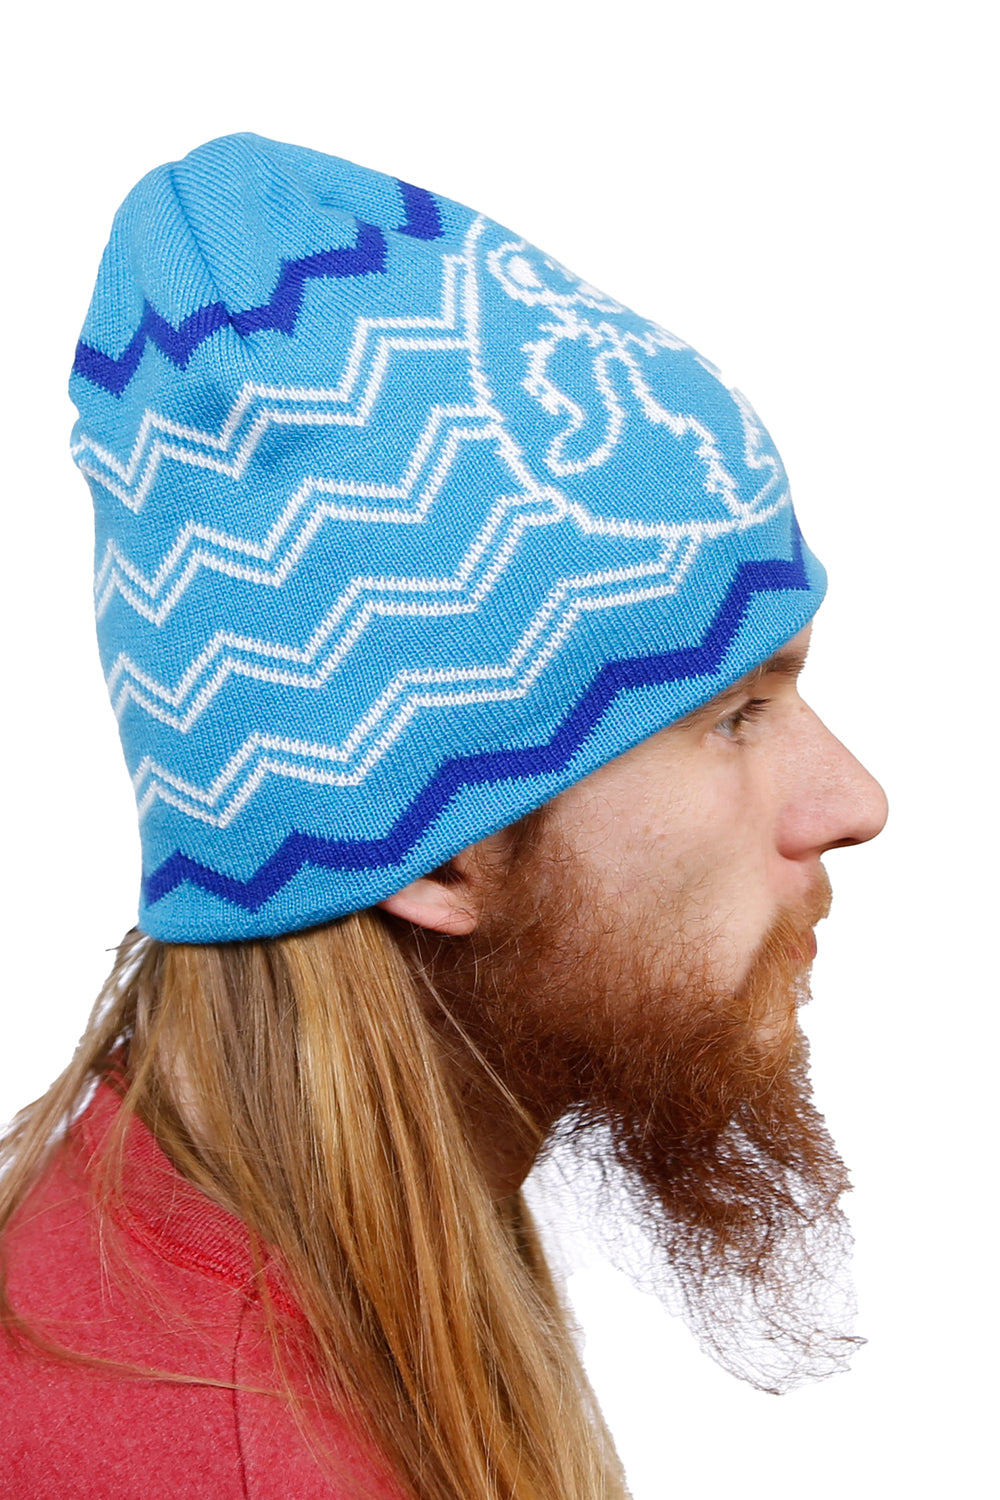 Grateful Dead Knit Dancing Bear Beanie Hat in Blue - eDeadShop